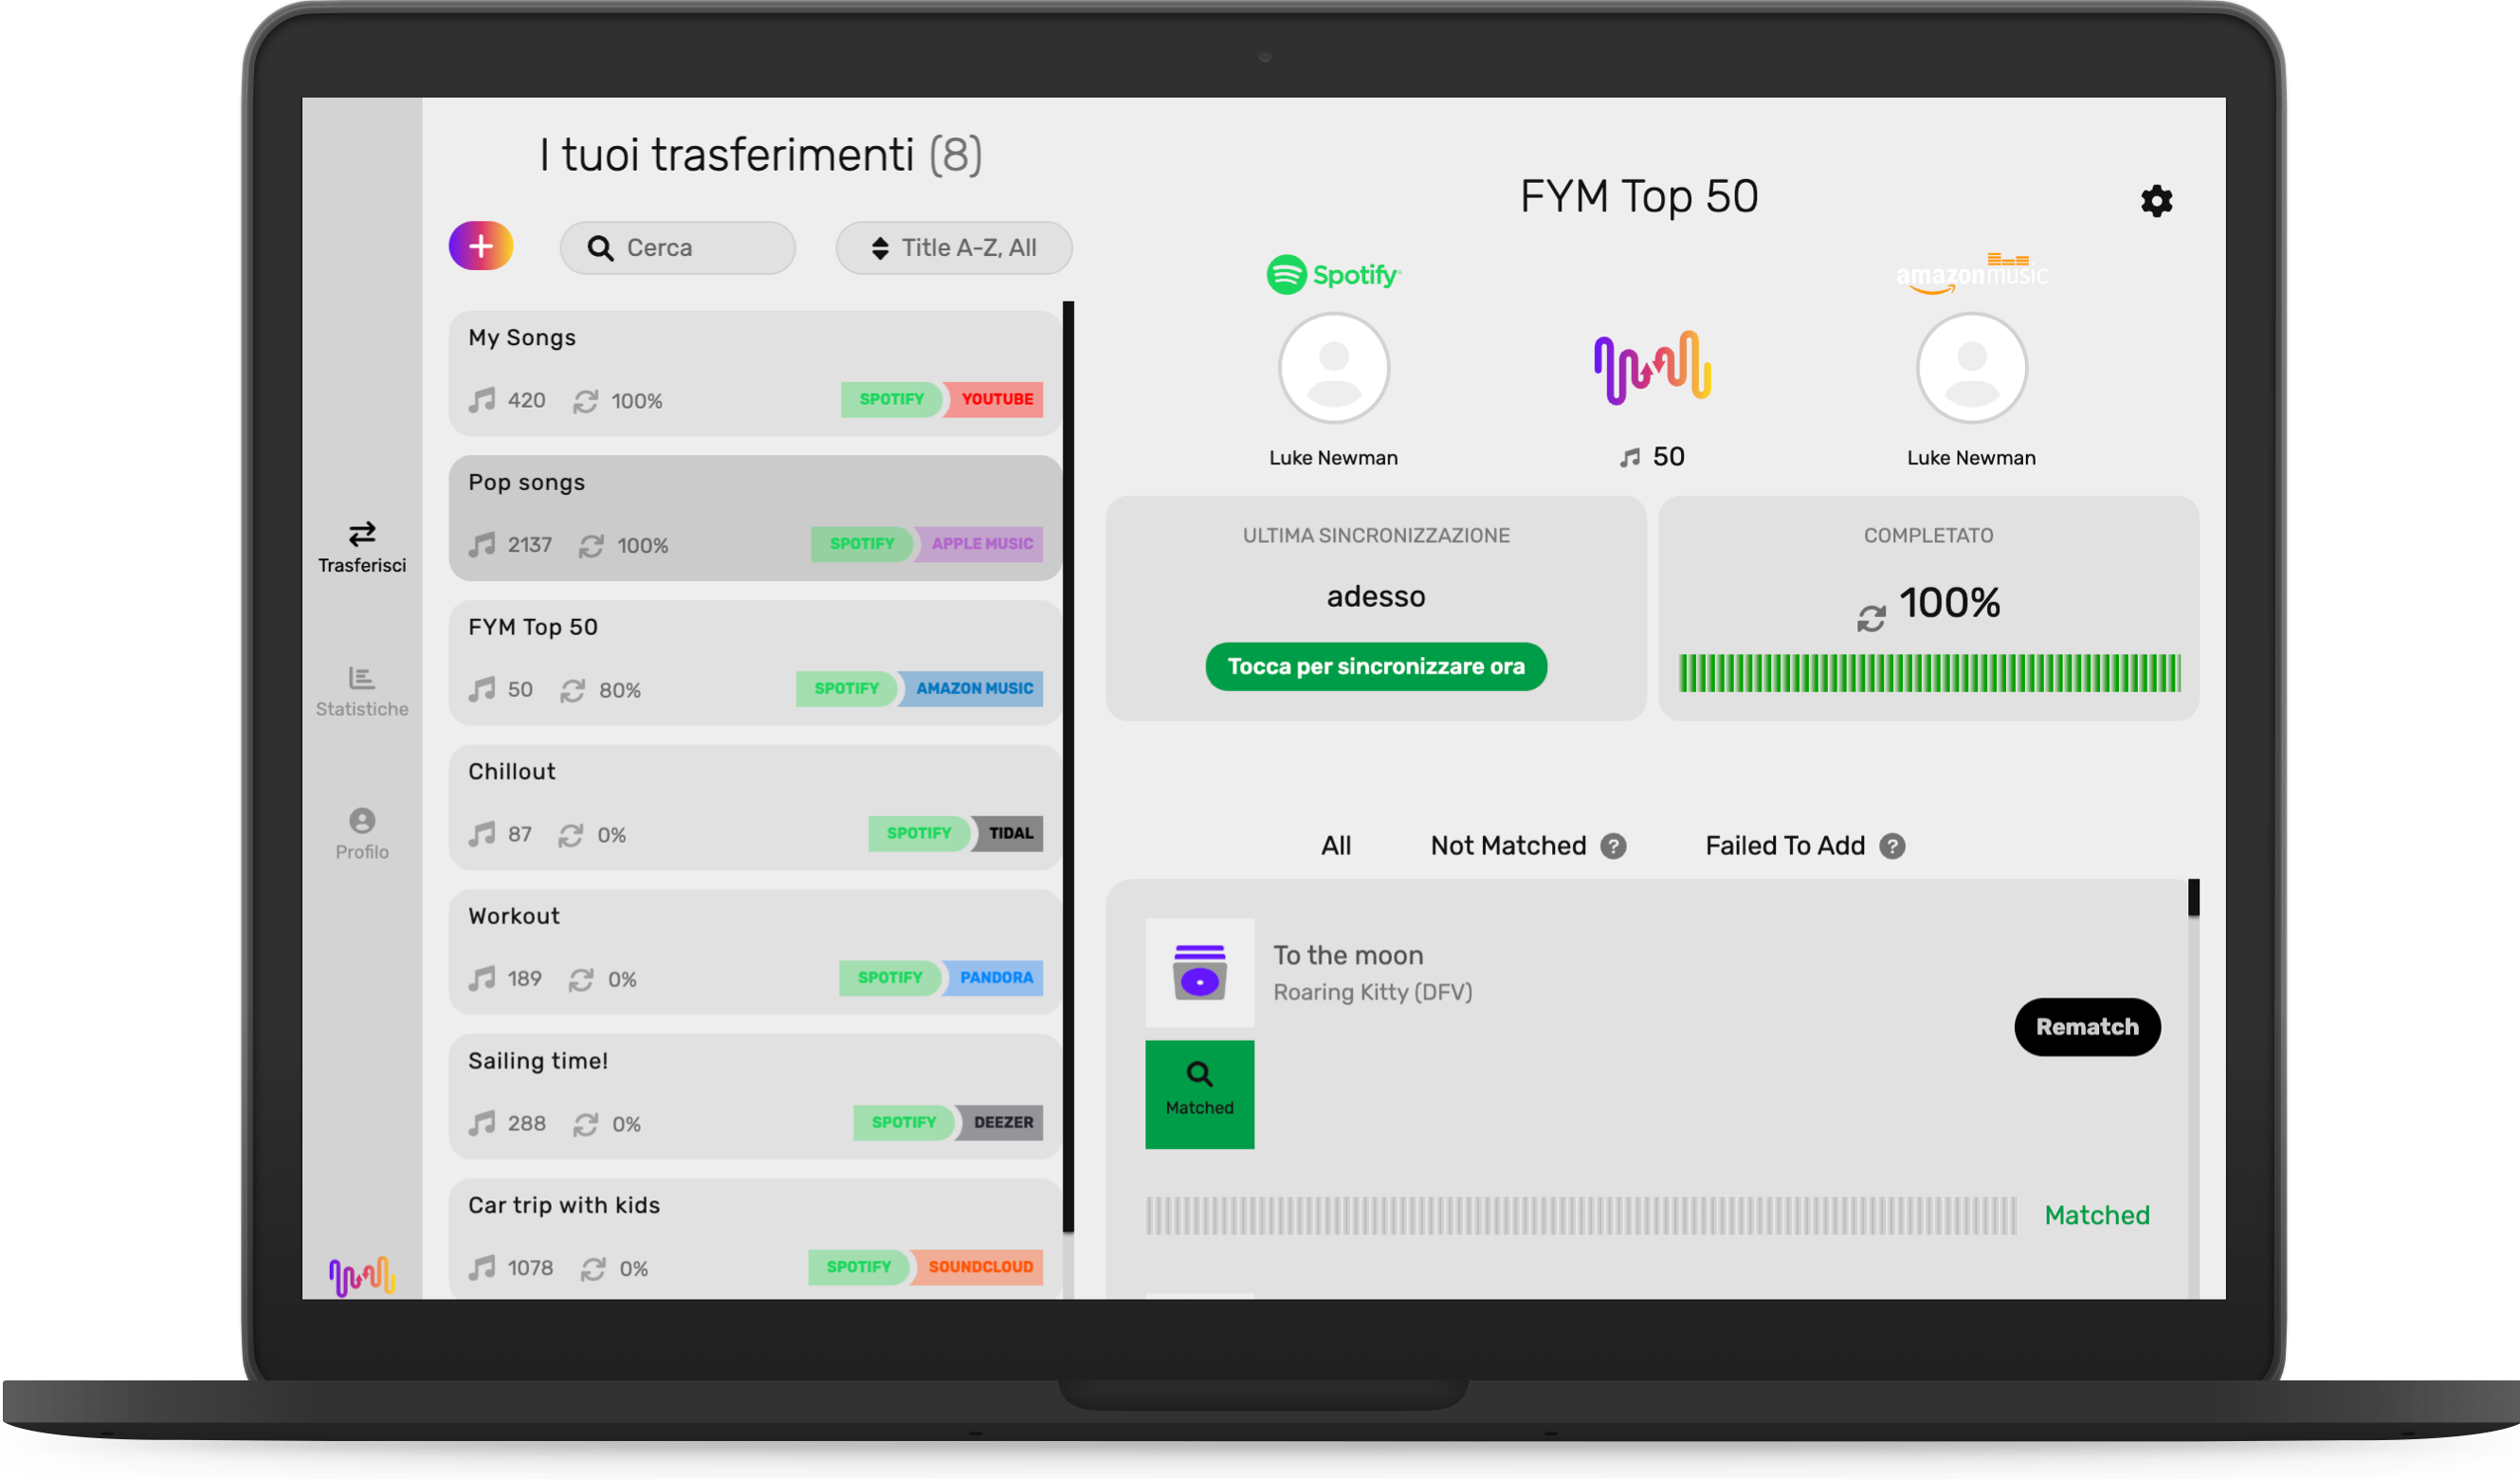 L'app FreeYourMusic ha abbinato lo schermo del desktop alle canzoni